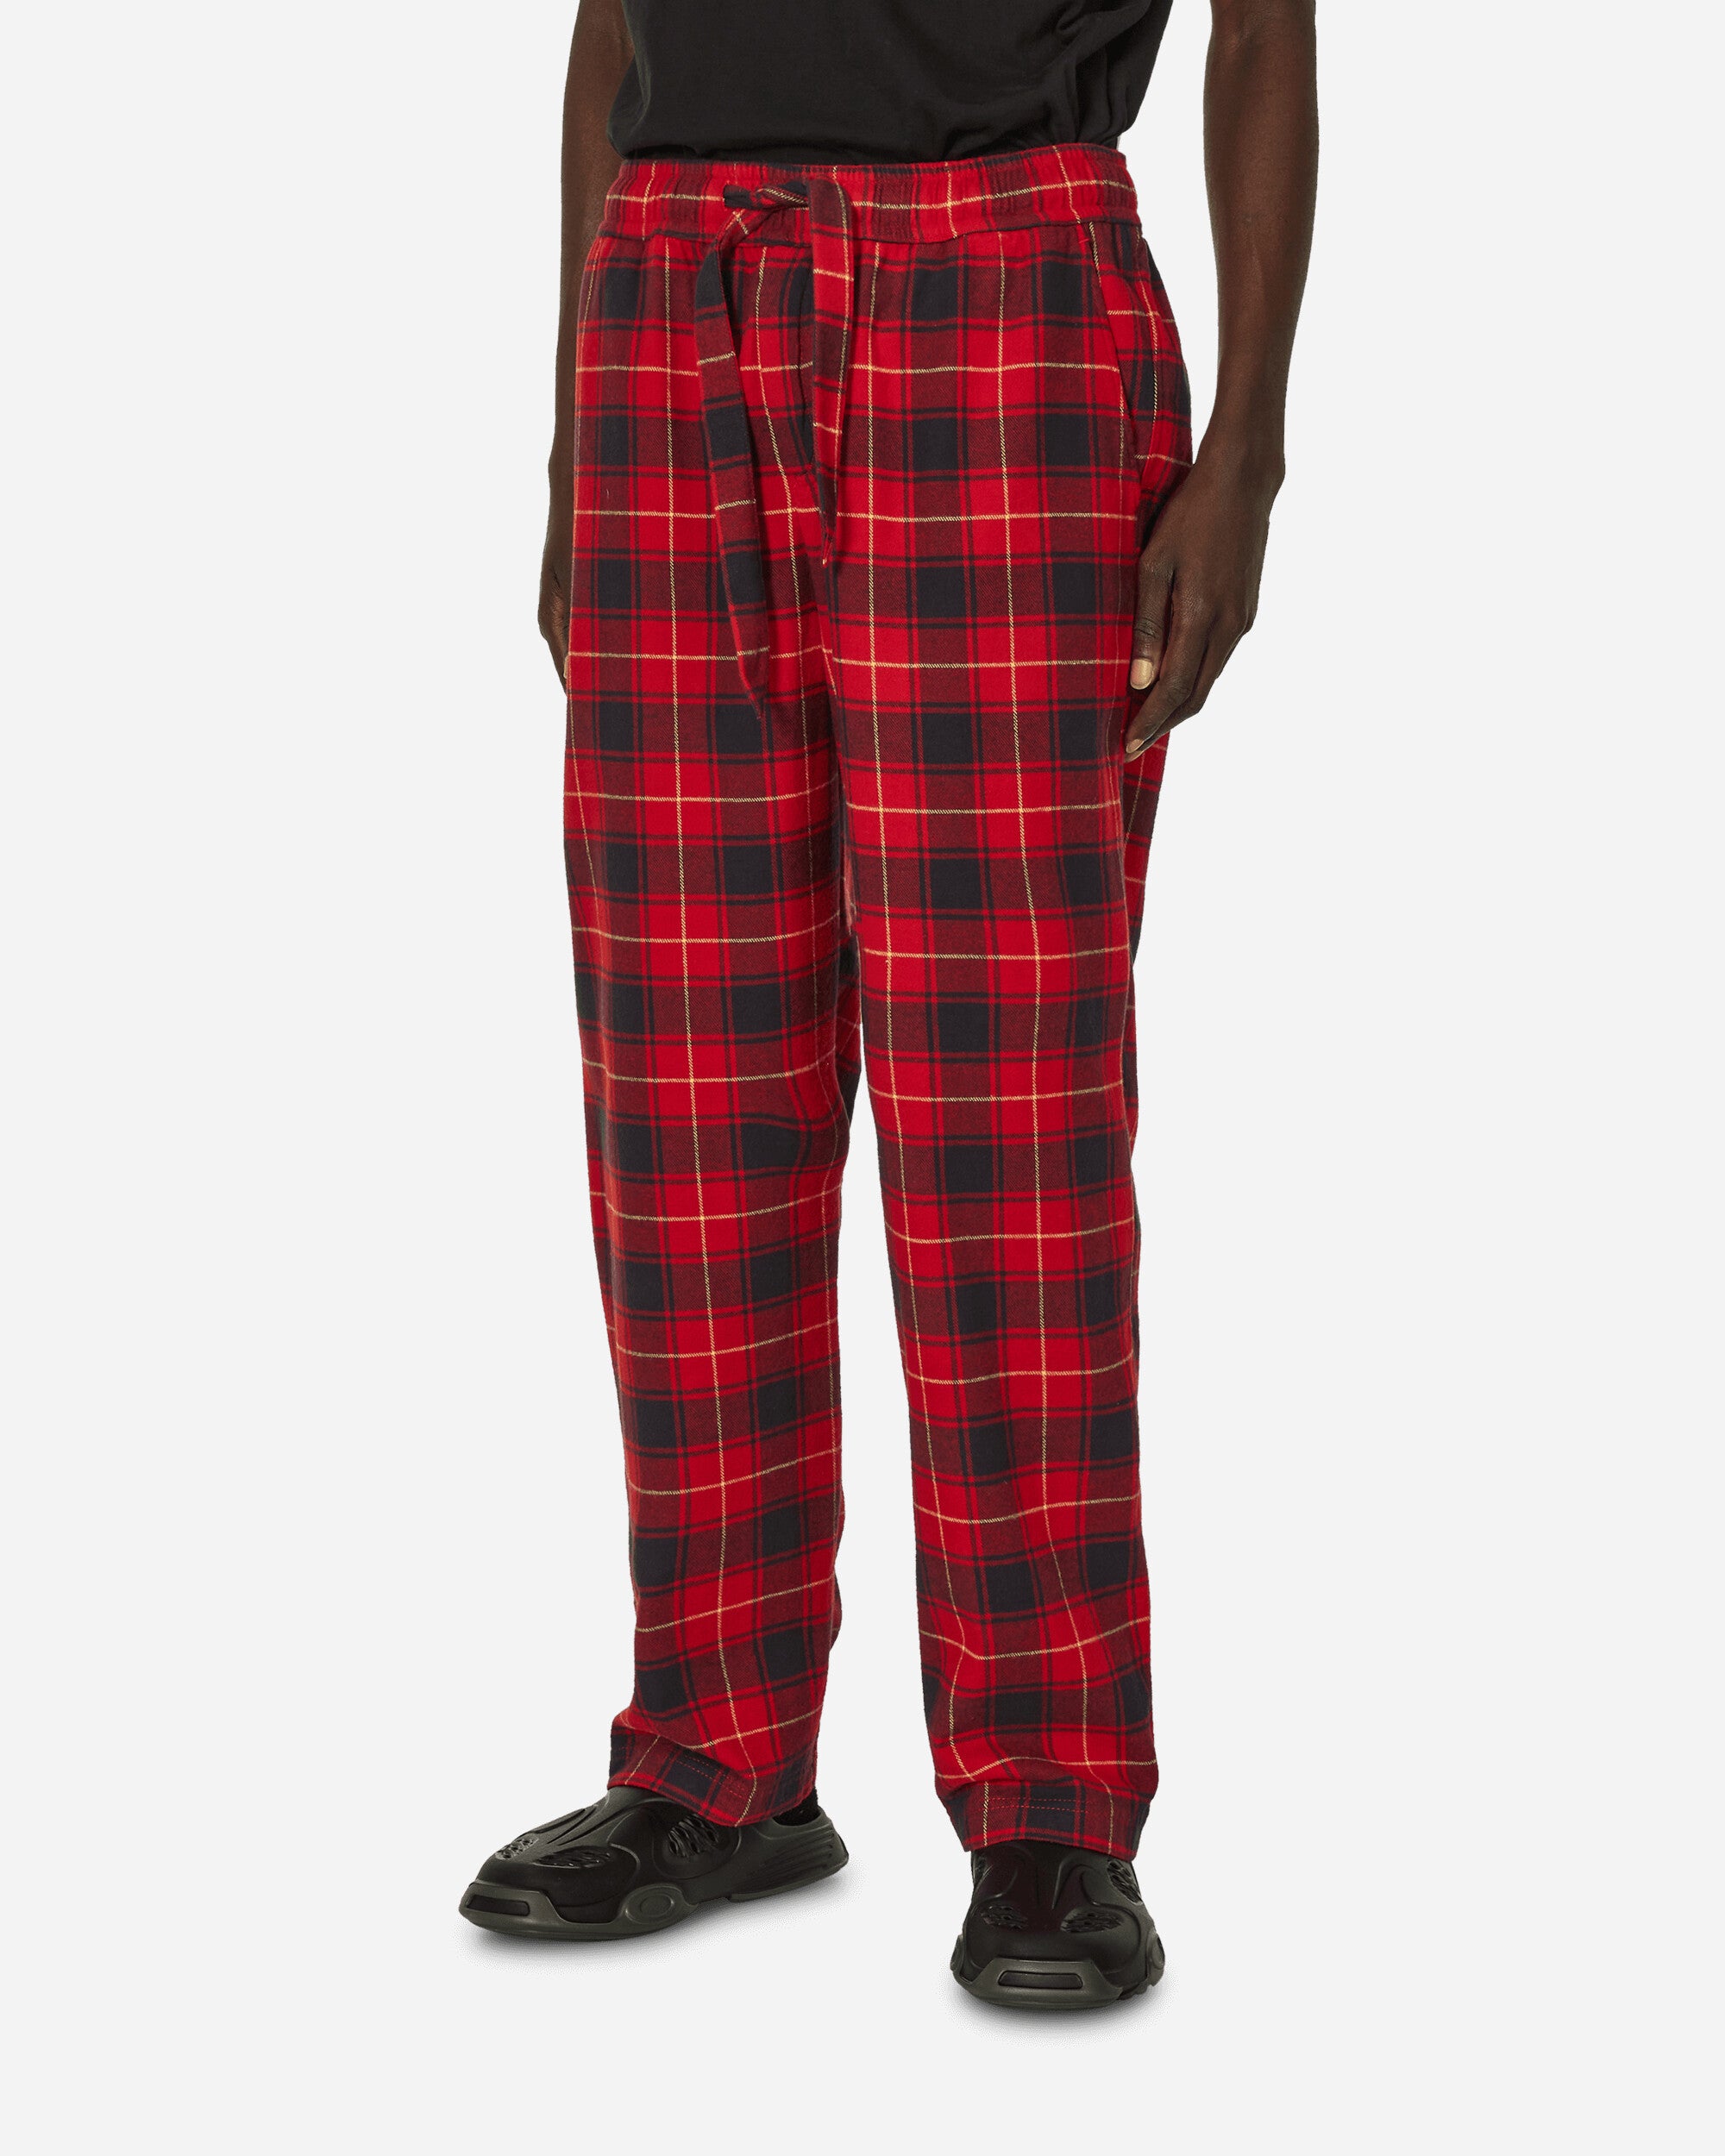 Tekla Pijama Flannel Pant Red Plaid Underwear Pajamas SWP-REPL REPL